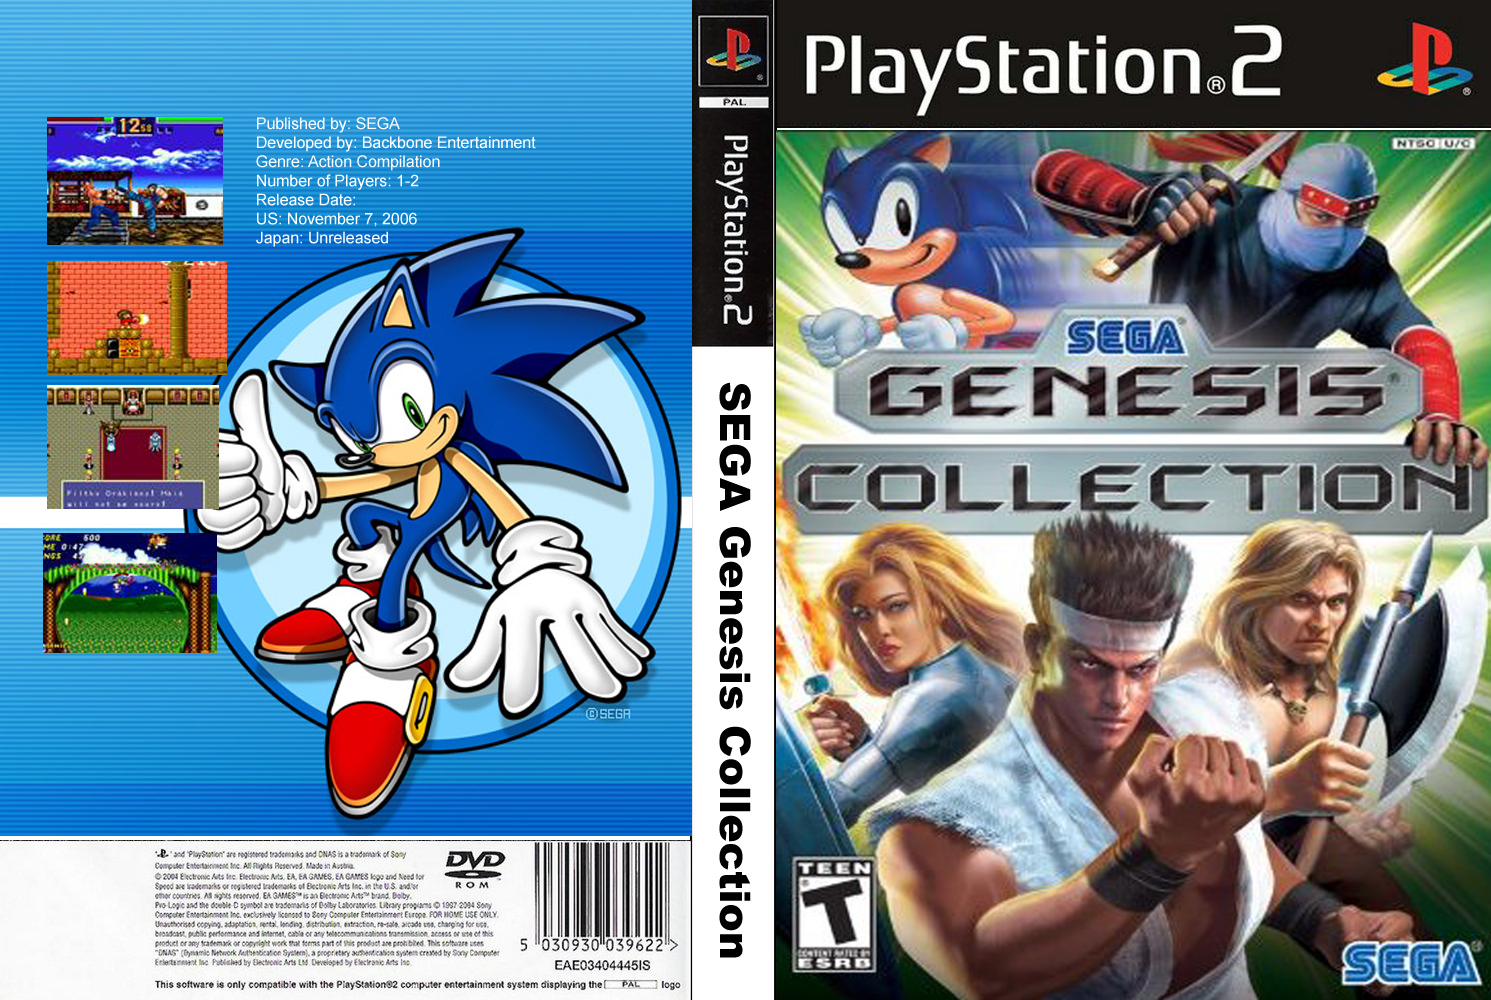 Сега генезис игры. Sega Mega Drive collection ps2. Sega Classics collection ps2. Sega Genesis collection ps2. Sega Mega Drive collection ps2 обложка.